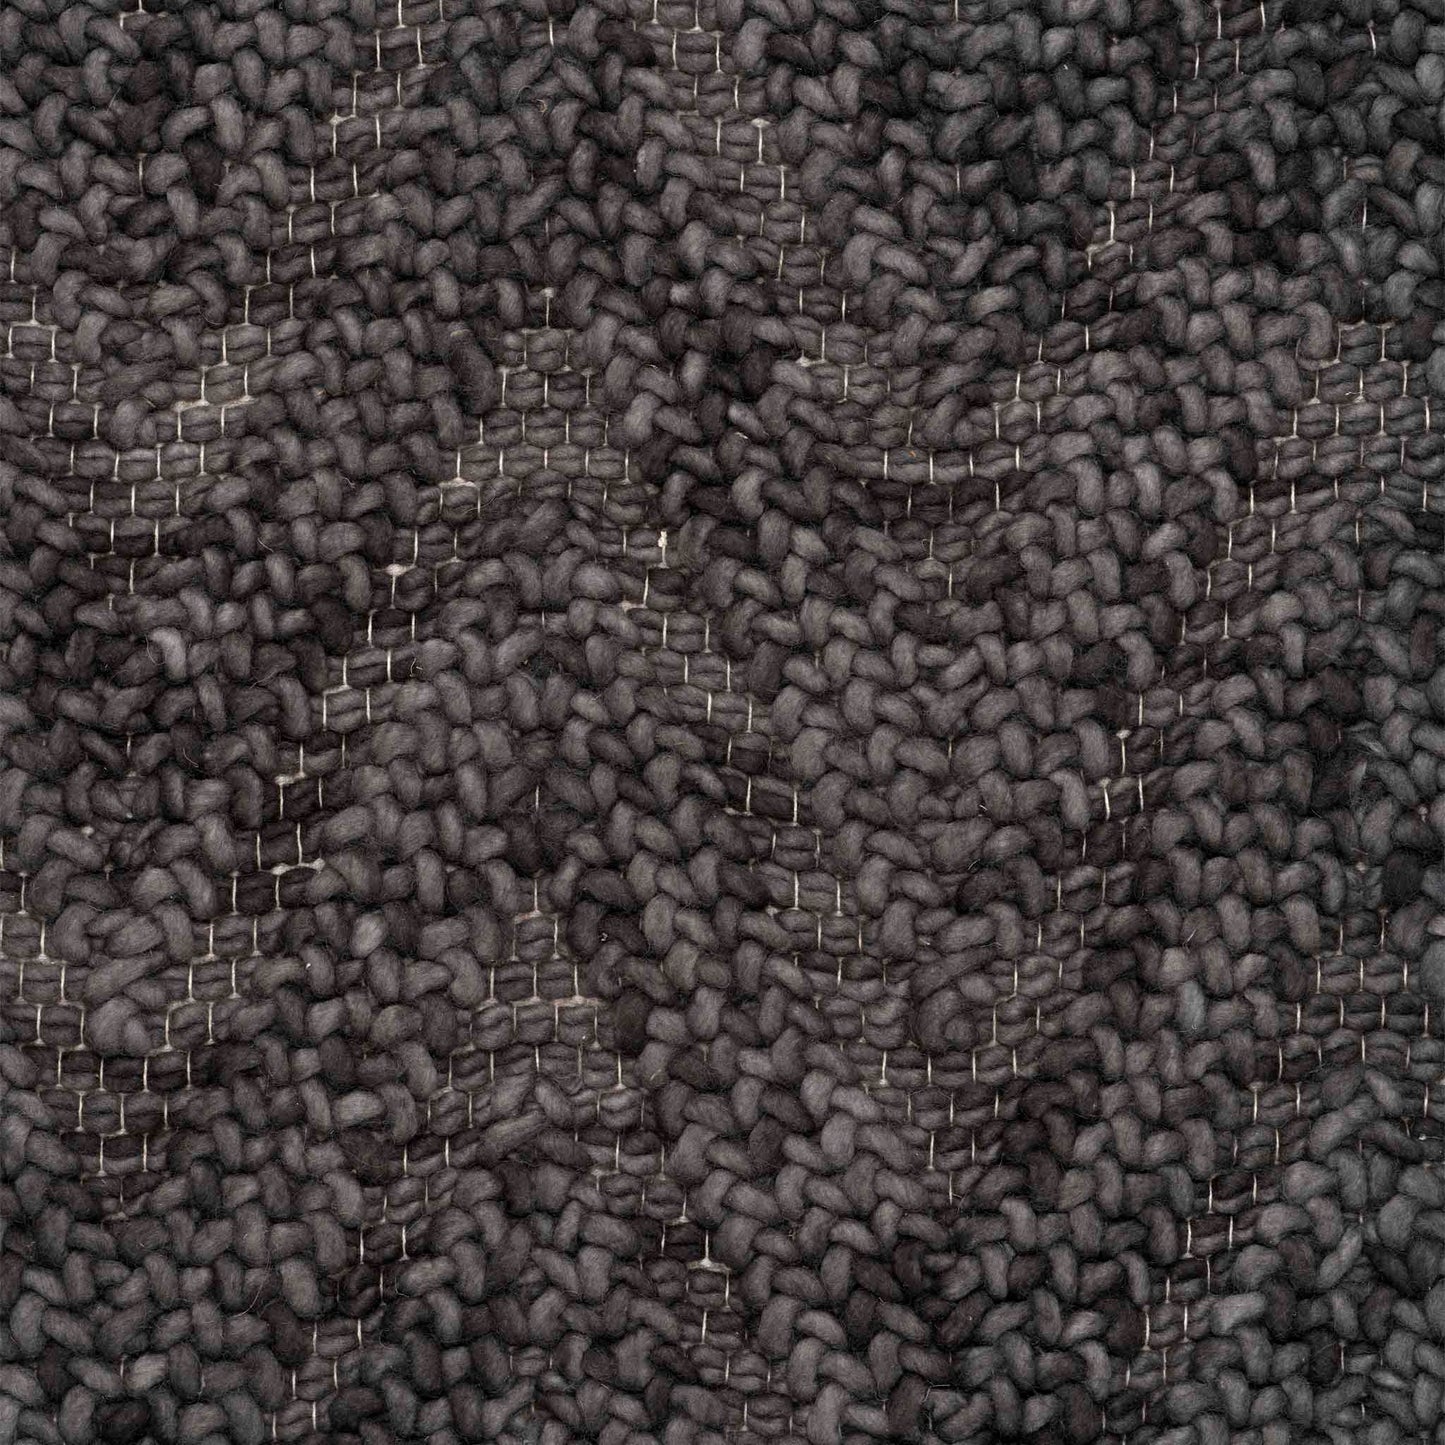 Tara wool rug